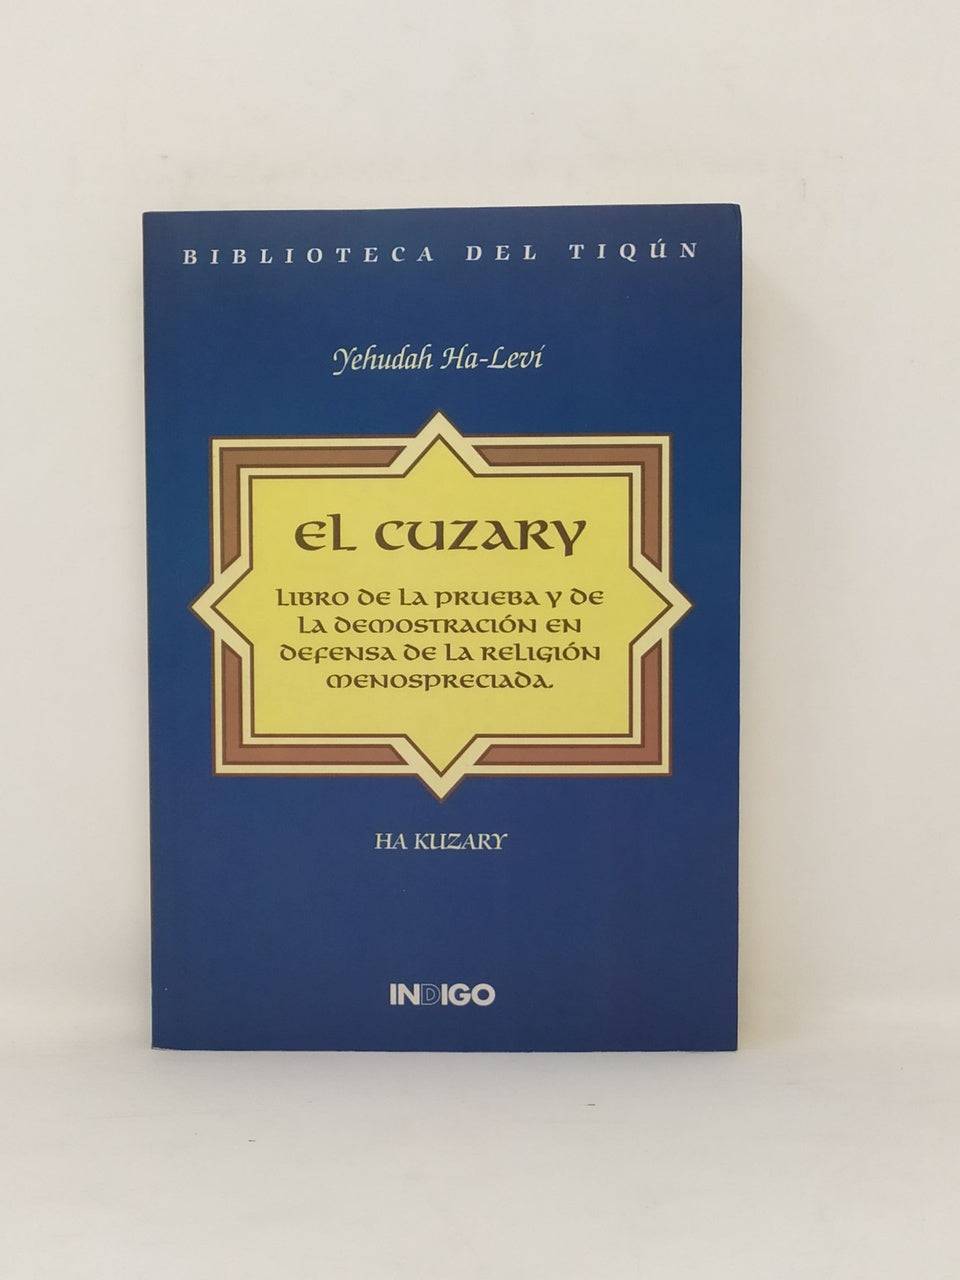 El cuzary (libro de la prueba y de la demostración) - Libreria Jerusalem Centro